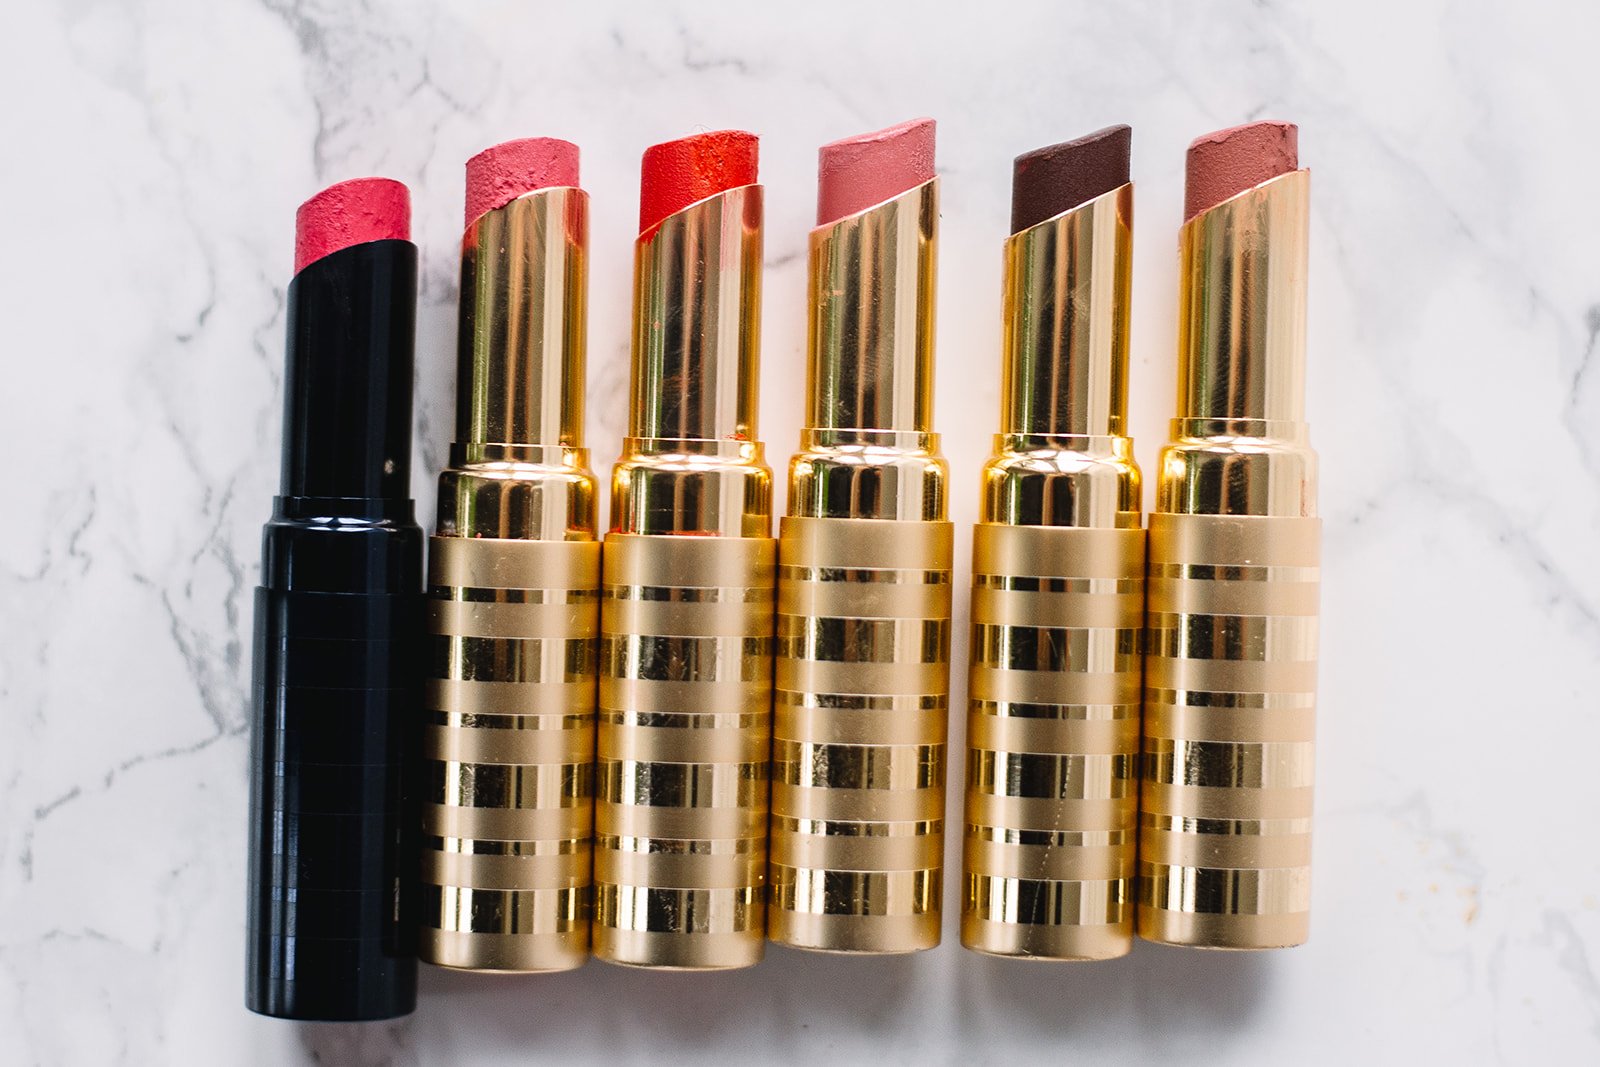 Beautycounter lipsticks